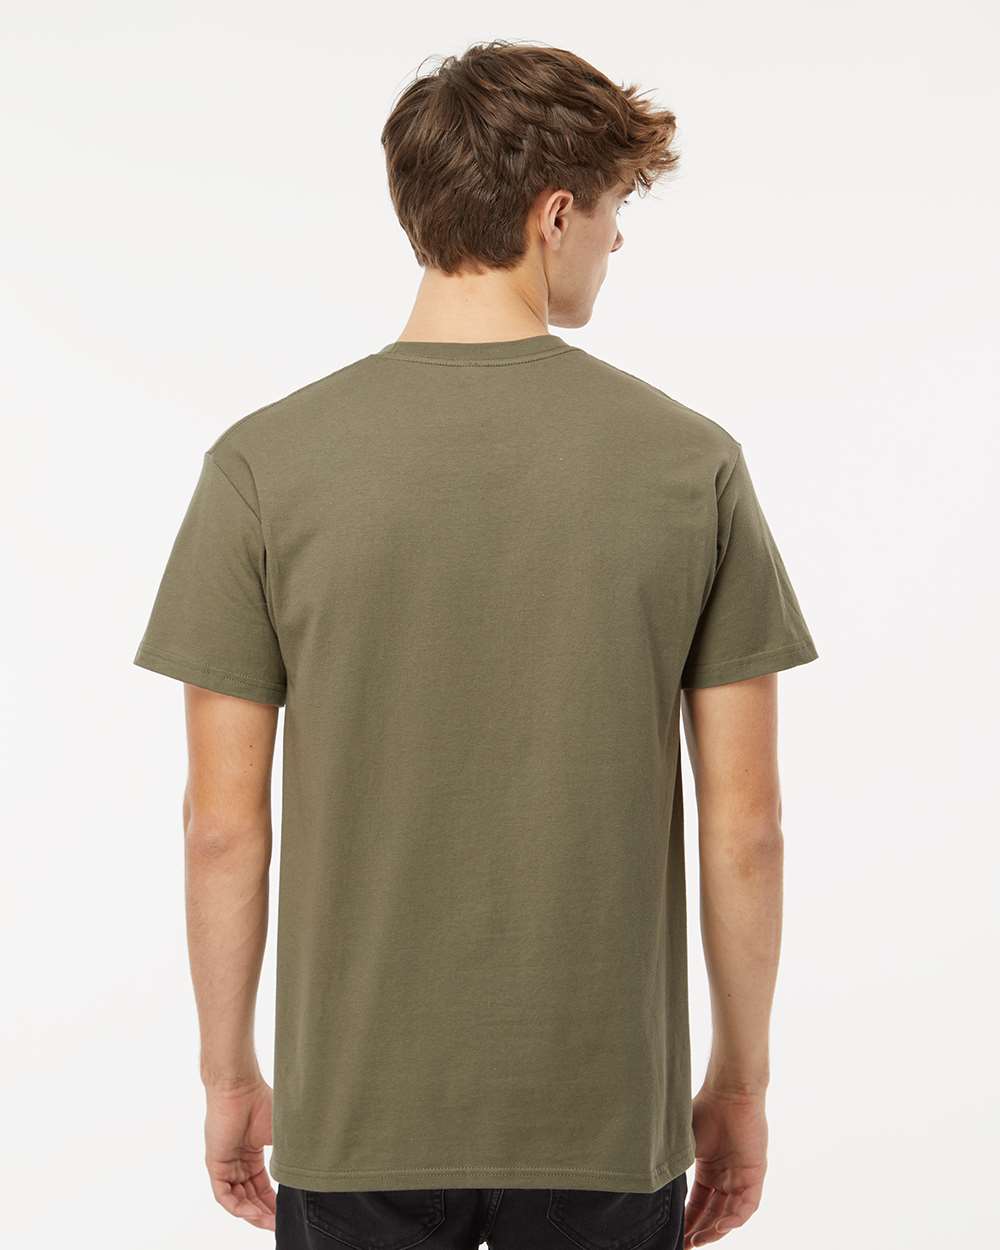 M&O Ring-Spun T-Shirt 5500 #colormdl_Military Green